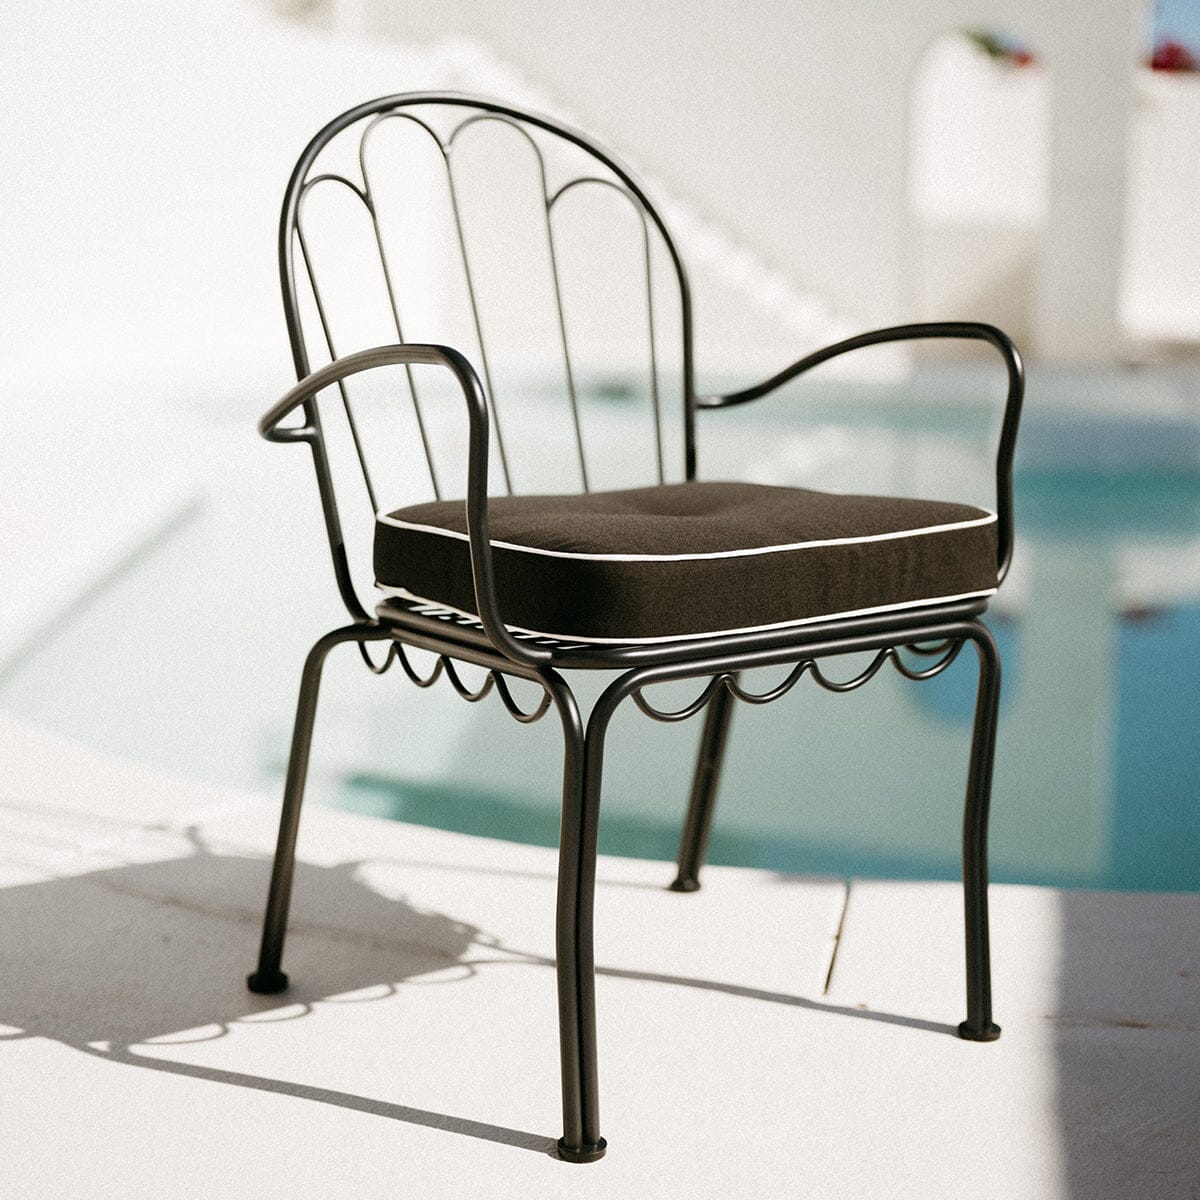 The Al Fresco Chair Cushion - Rivie Black Al Fresco Chair Cushion Business & Pleasure Co Aus 